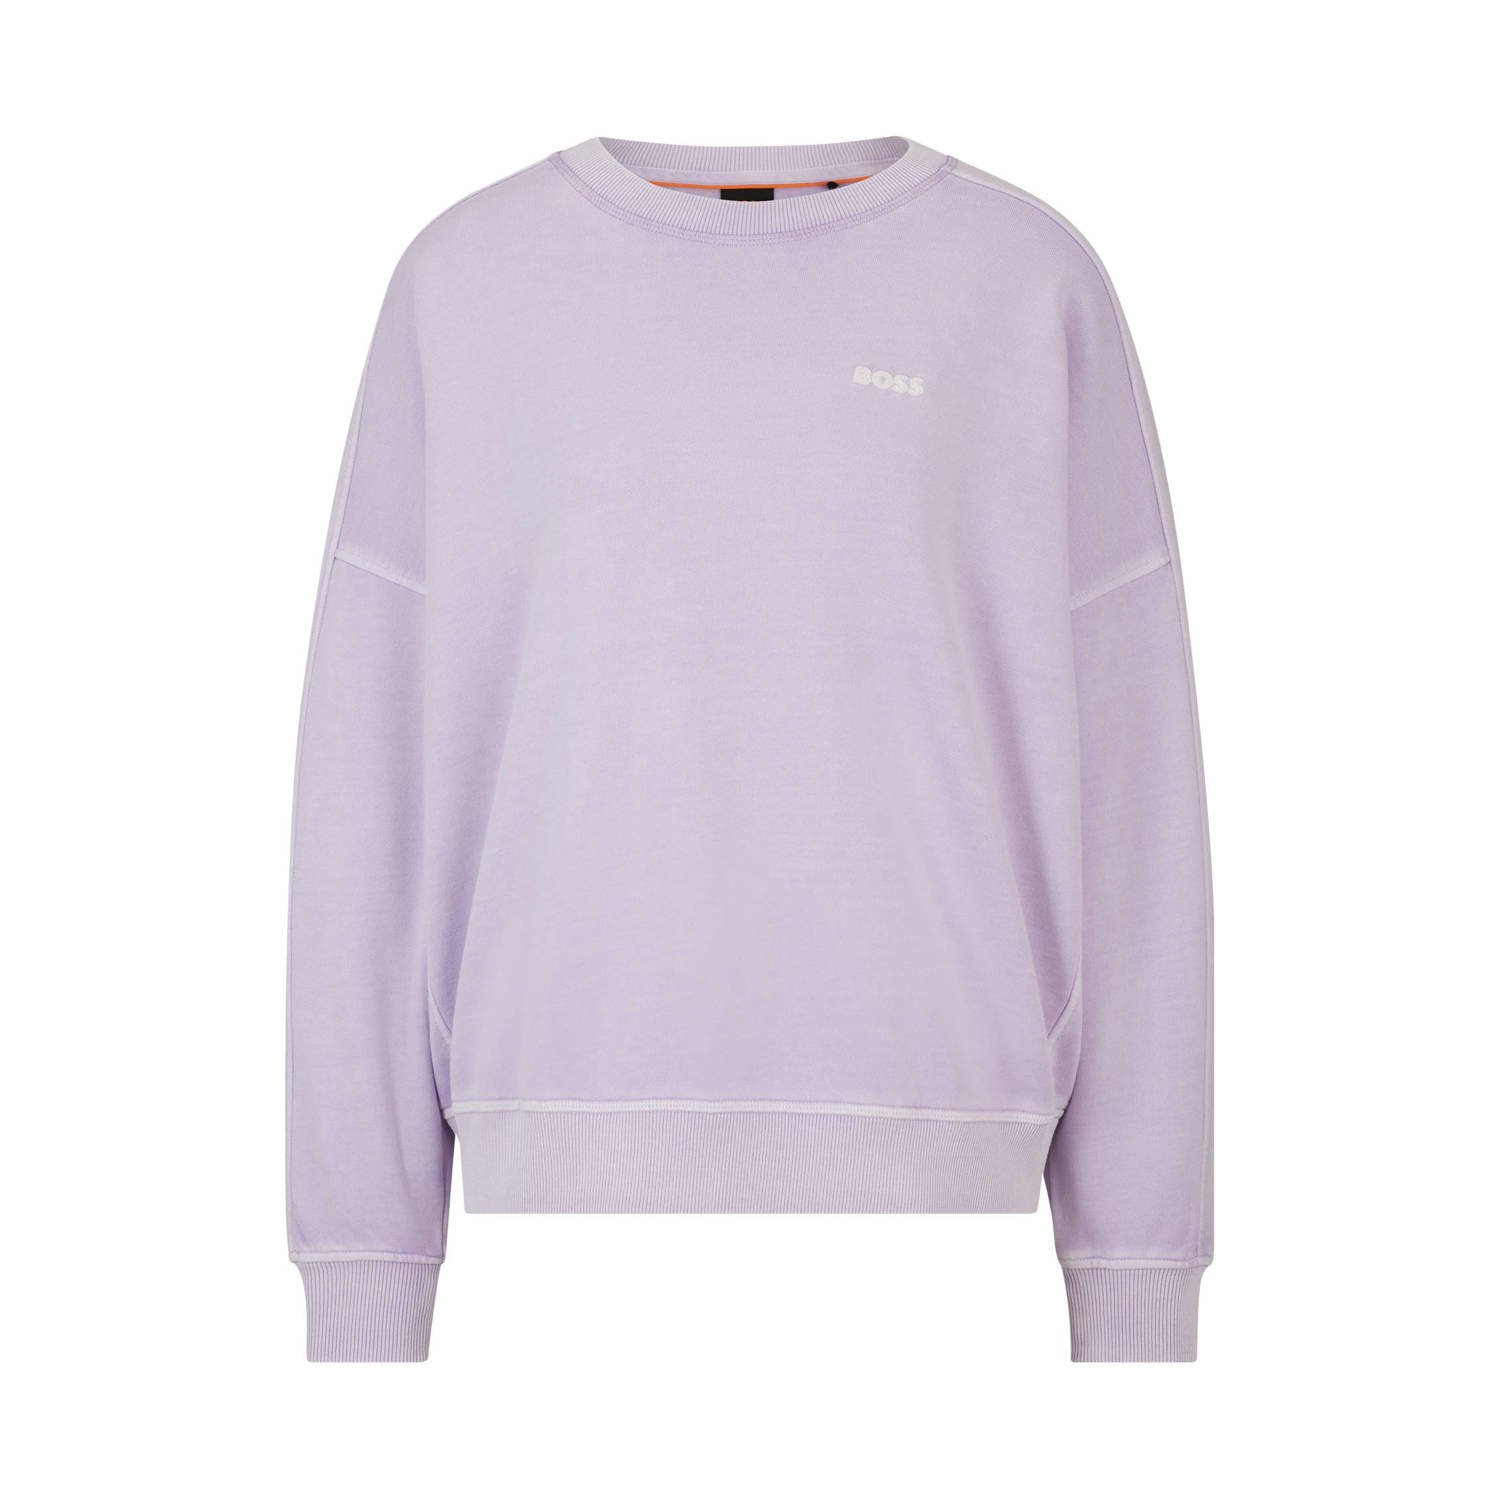 BOSS sweater lila